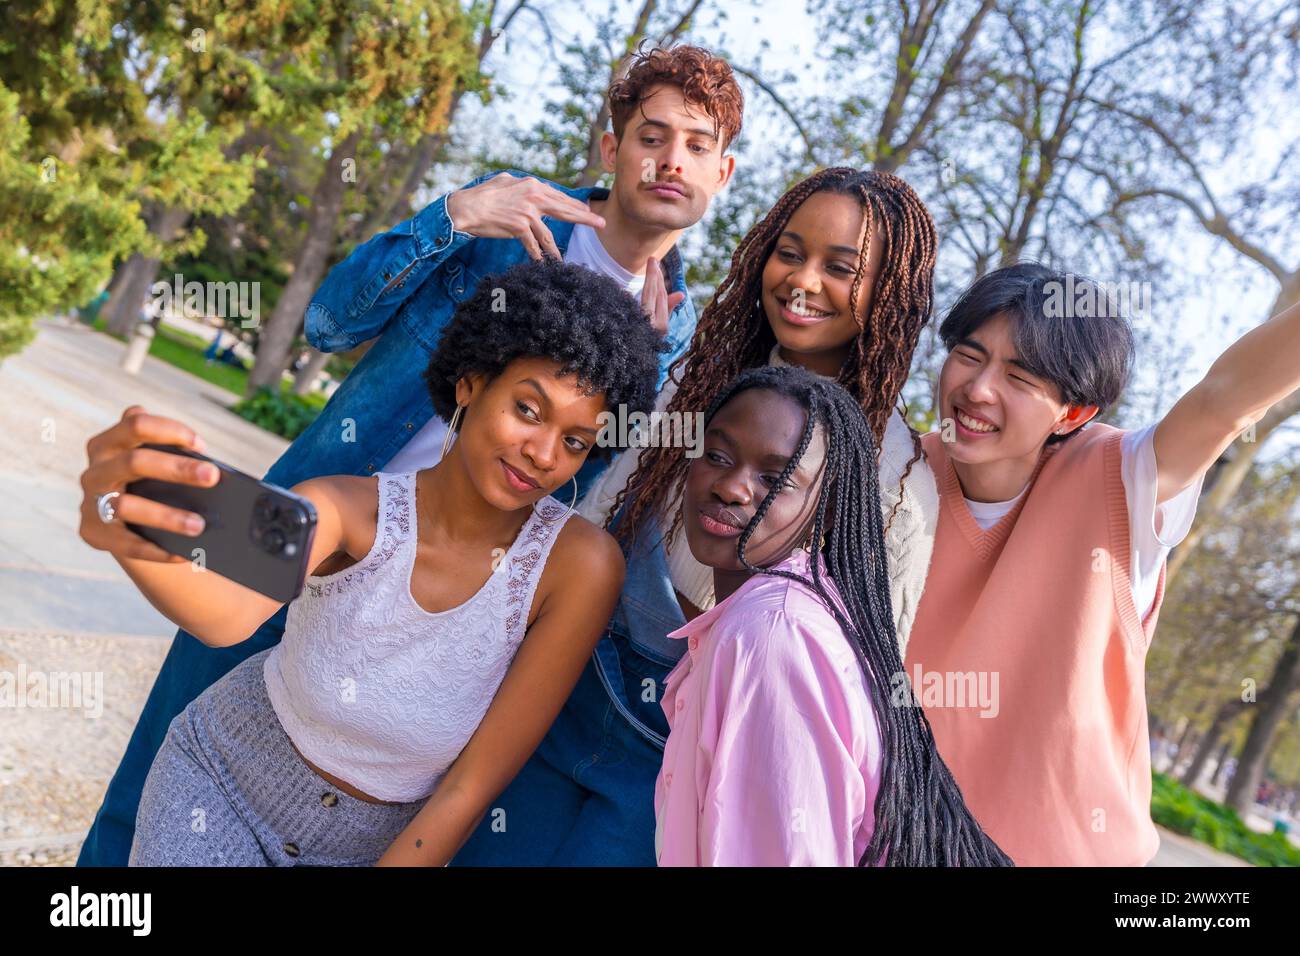 Dynamische Aufnahme einer Gruppe fröhlicher, multiethnischer Freunde, die gemeinsam Selfie im Park machen Stockfoto